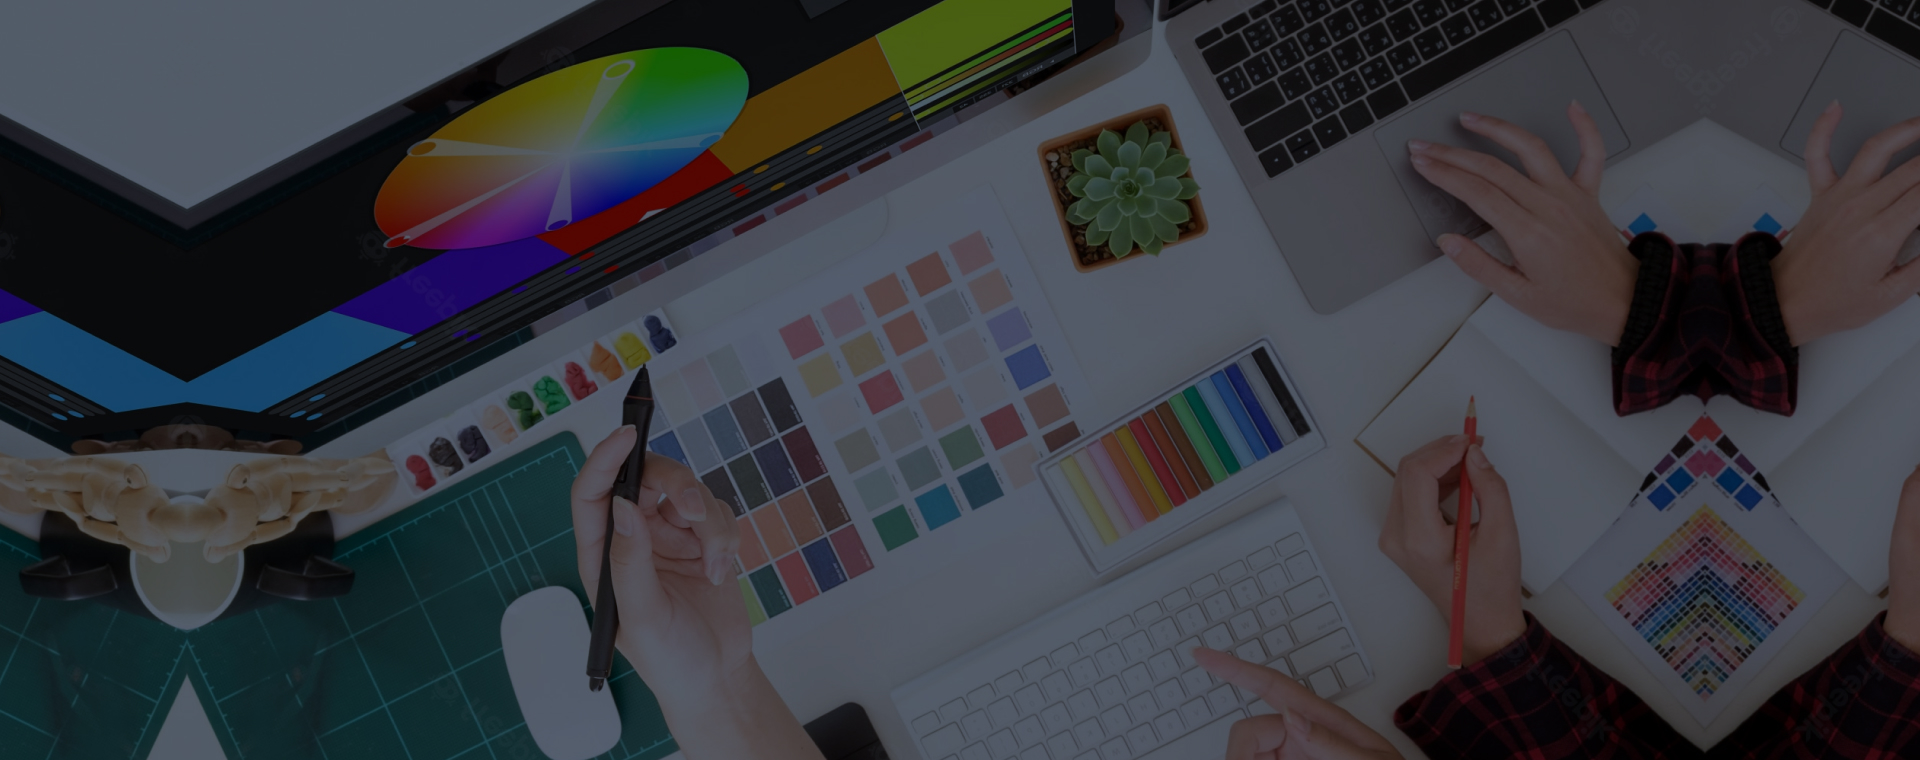 Психология цветов в веб-дизайне: как выбрать цветовую палитру, чтобы повысить конверсию сайтов